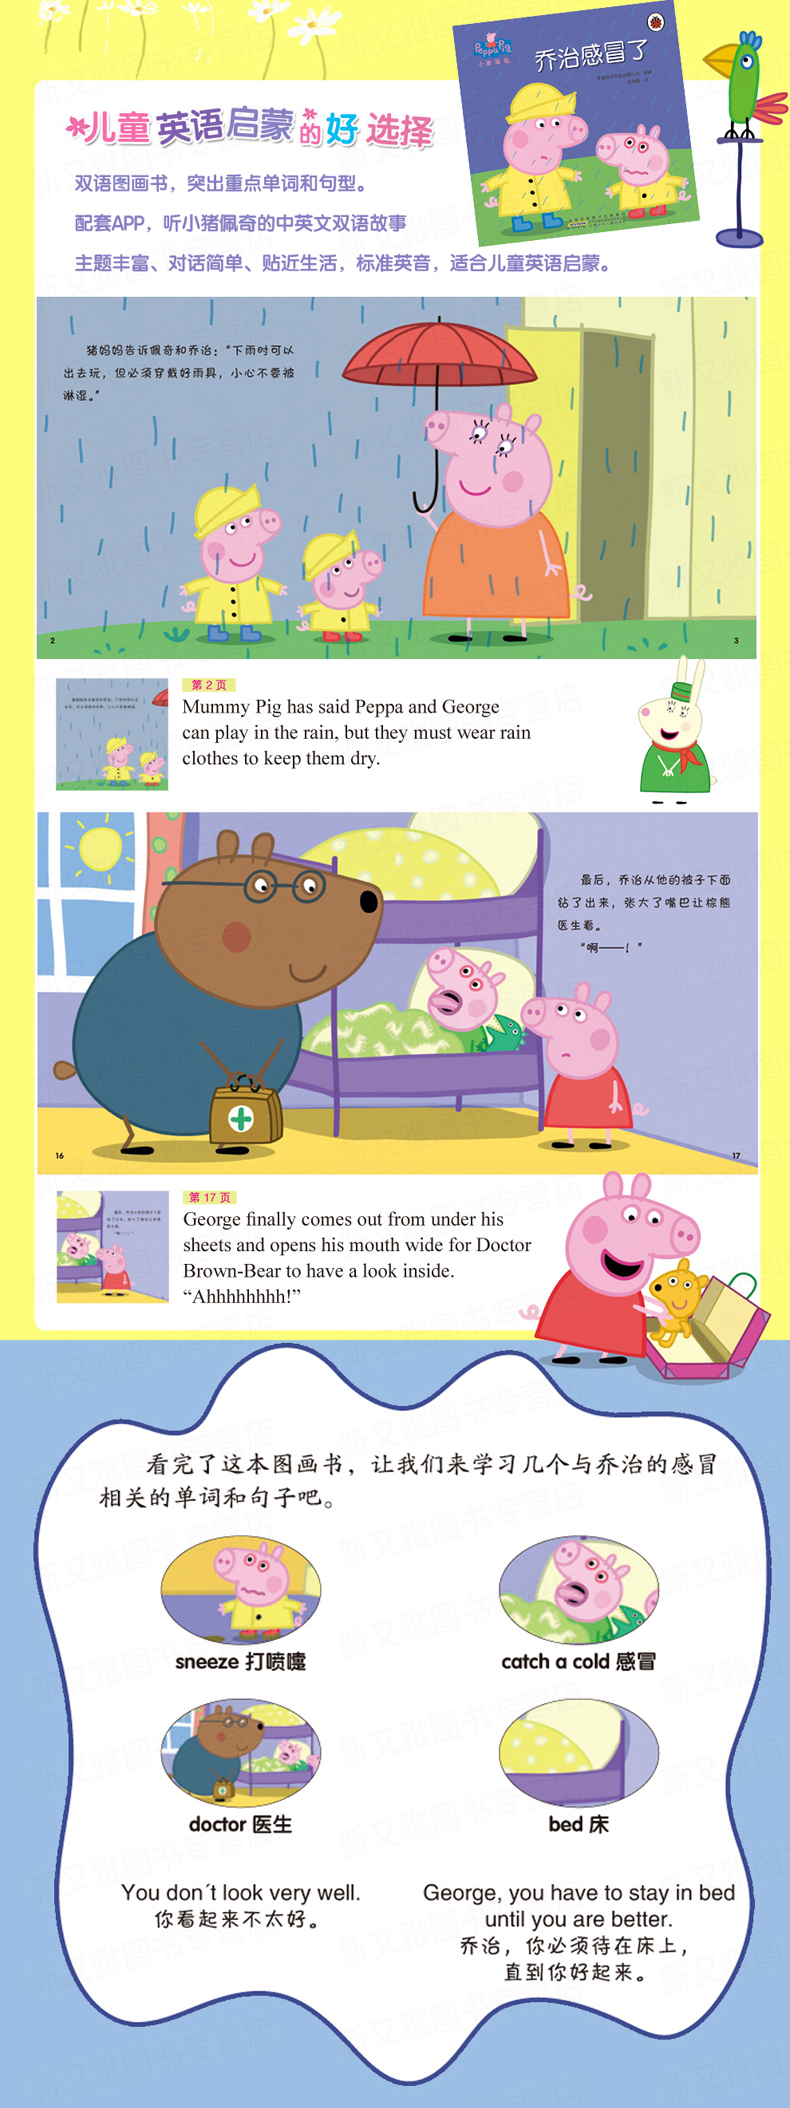 正版 小猪佩奇动画故事书第二辑 全10册 儿童绘本 3-6岁儿童睡前故事书 动画中英文双语